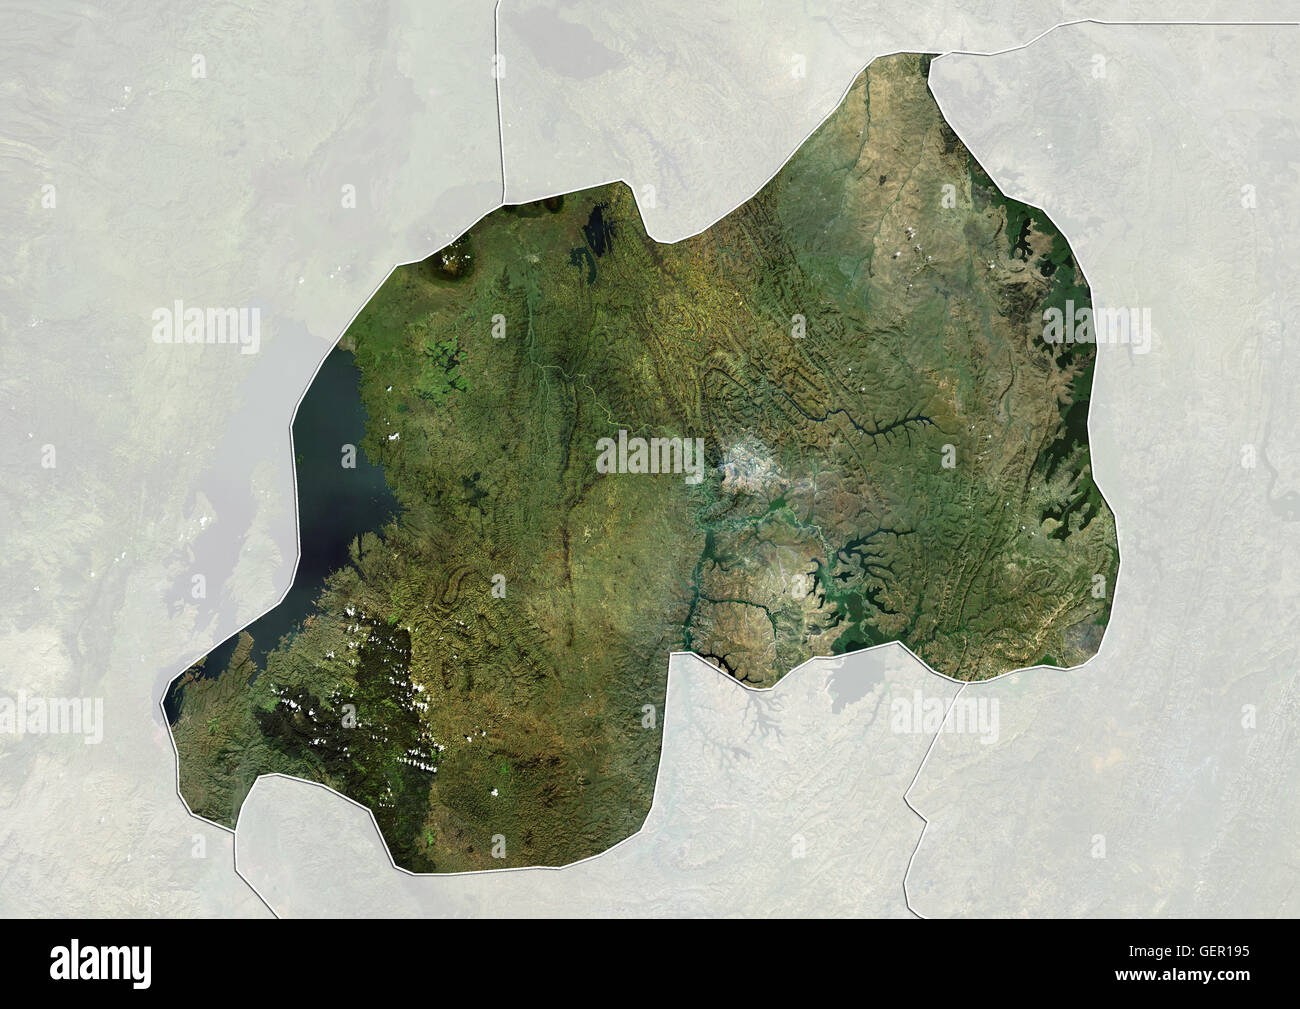 Satellitenansicht von Ruanda (mit Ländergrenzen und Maske). Dieses Bild wurde aus Daten von Landsat-Satelliten erworben erstellt. Stockfoto